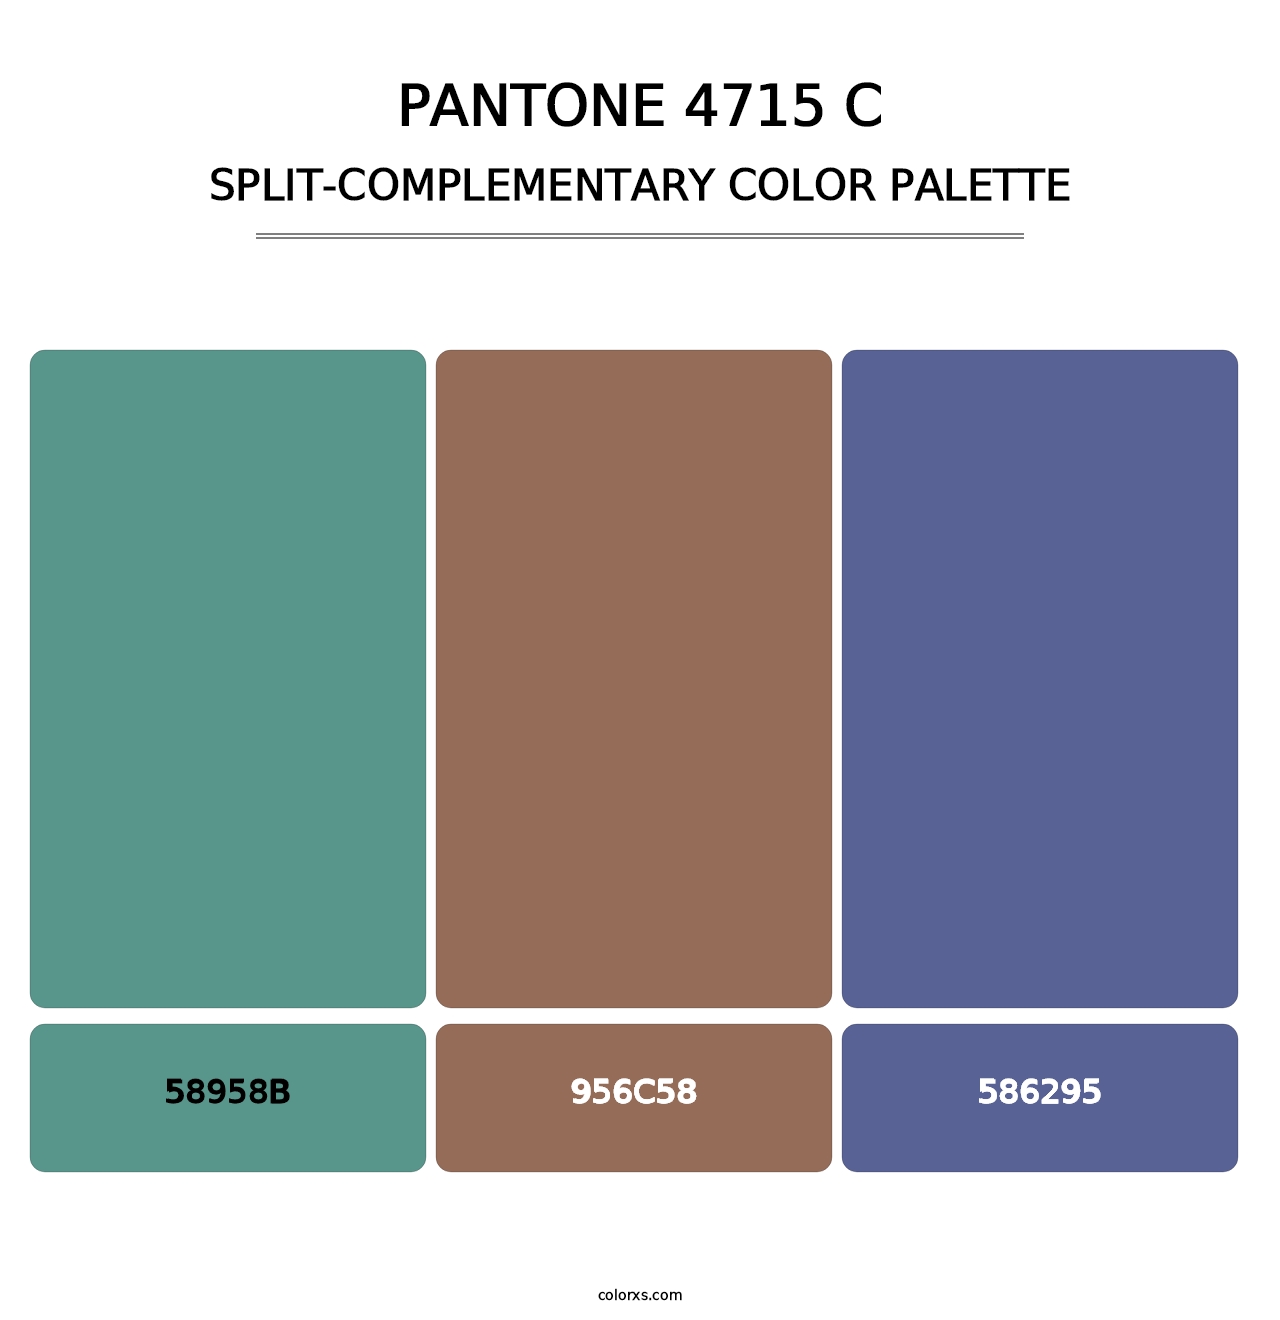 PANTONE 4715 C - Split-Complementary Color Palette